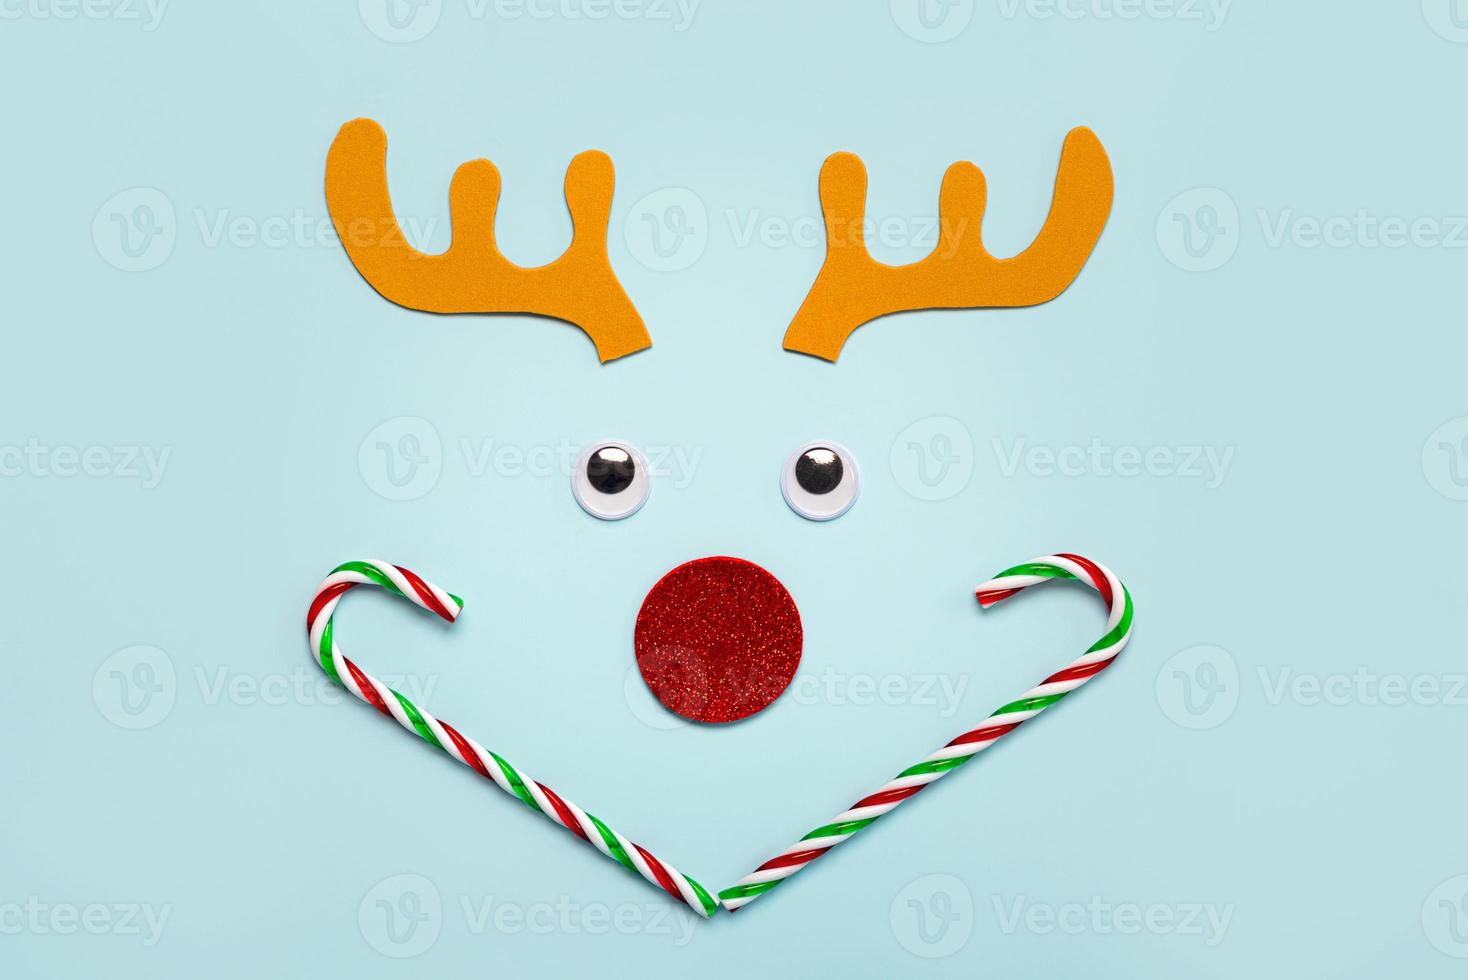 Buon Natale. Natale rudolph corna di renna con occhi falsi e bastoncini di zucchero a strisce. sfondo di concetto di natale foto